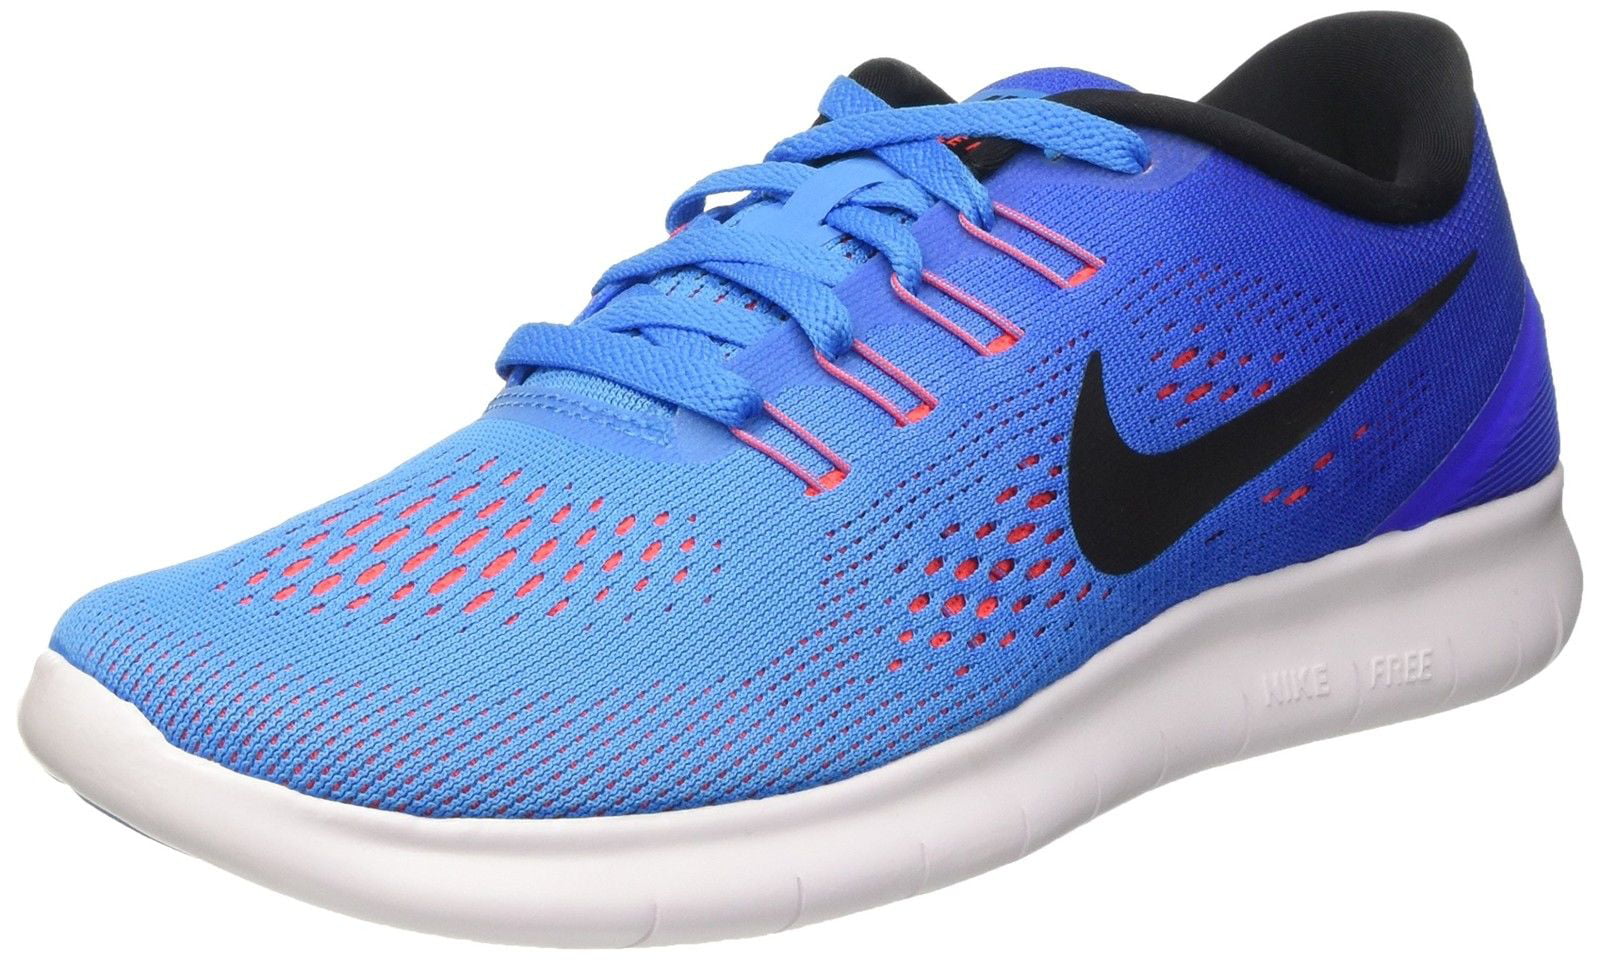 Women's Nike Free RN Blue Glow Running Training Shoes Size 8 - Walmart.com